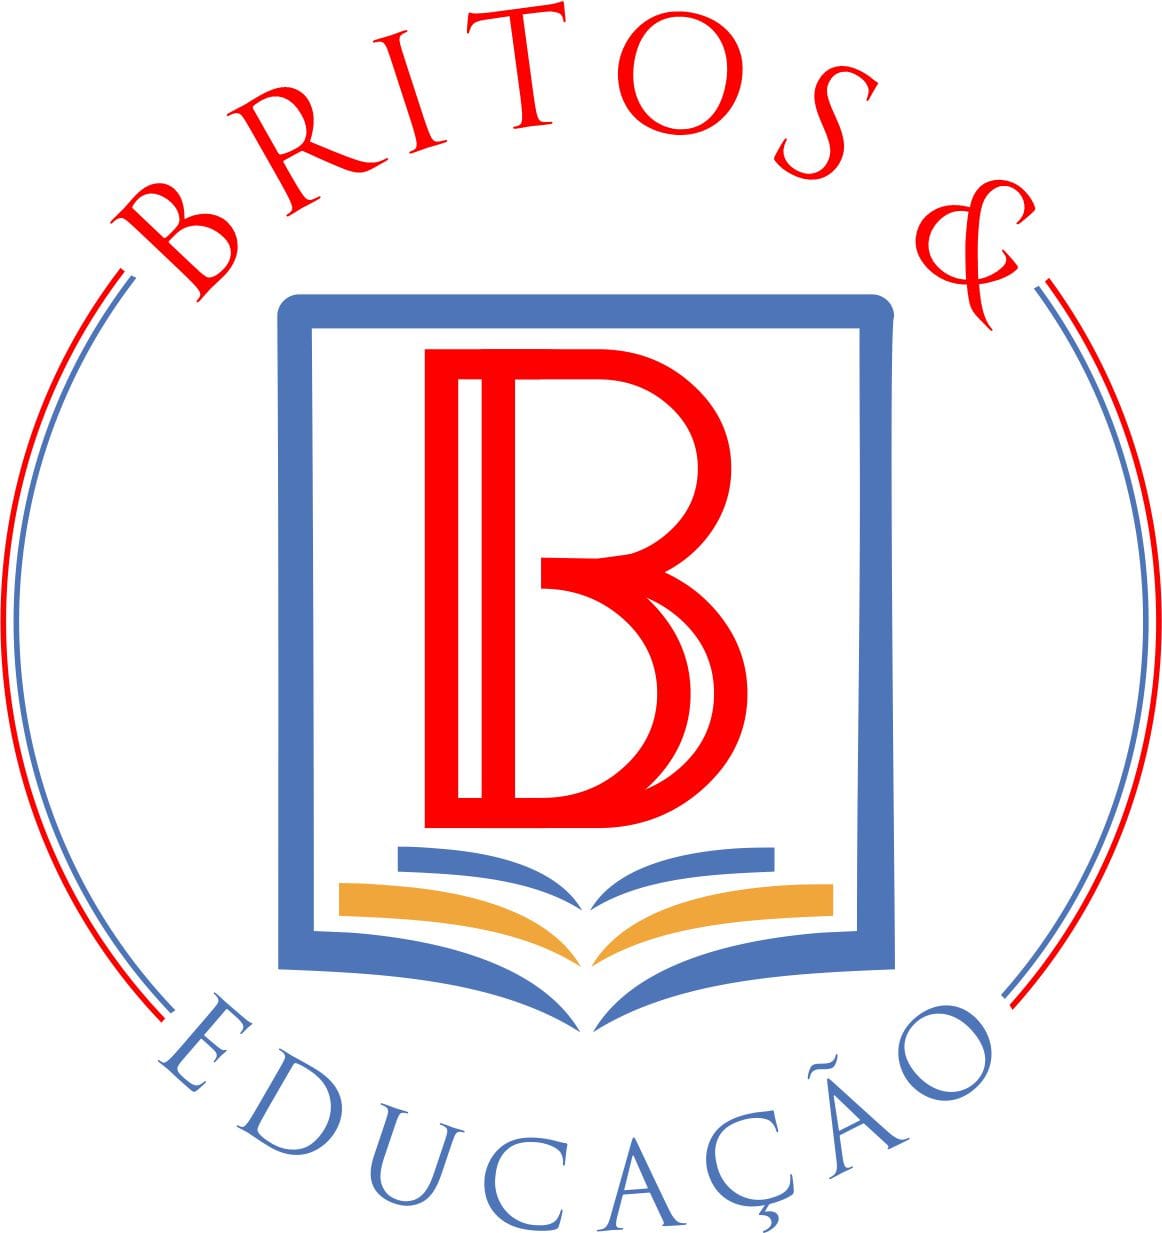 ESCOLA TECNICA BRITOS & EDUCAÇÃO